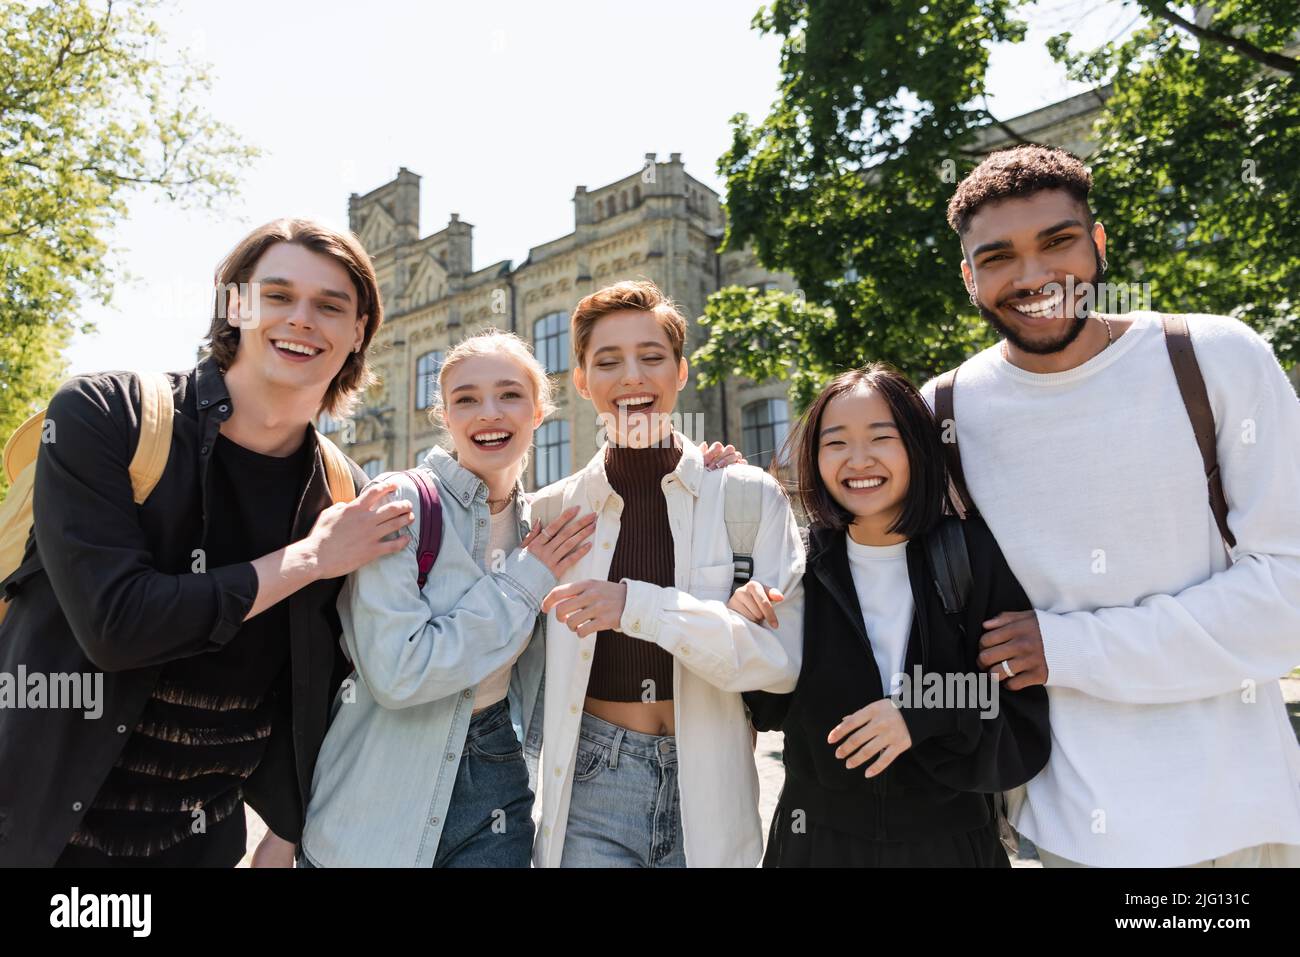 Studenti multietnici positivi che abbraccia e guarda la macchina fotografica all'aperto Foto Stock